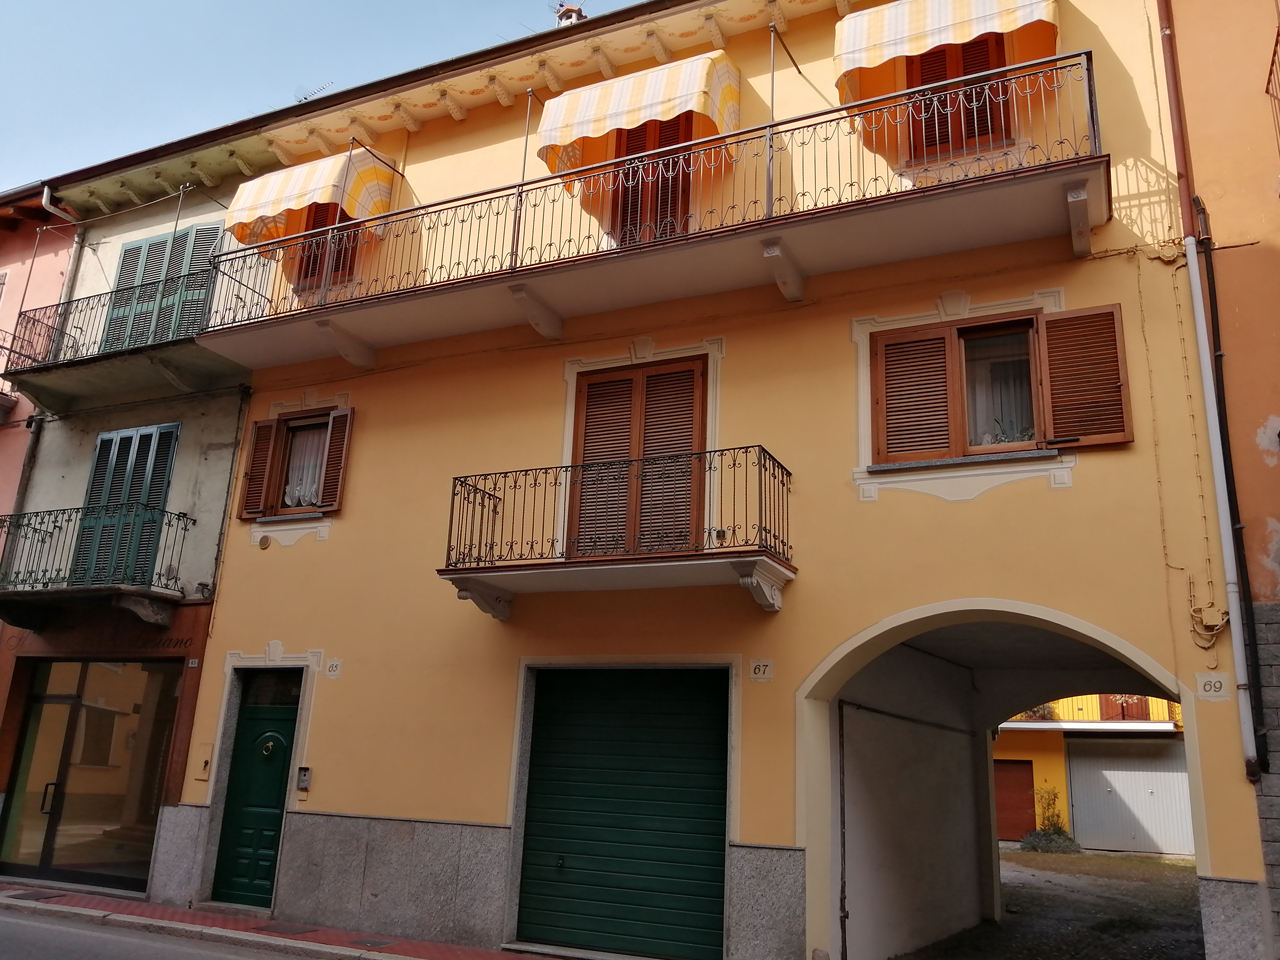 Casa privata in Via Novara, 69 (casa, privata) - Romagnano Sesia (NO) 